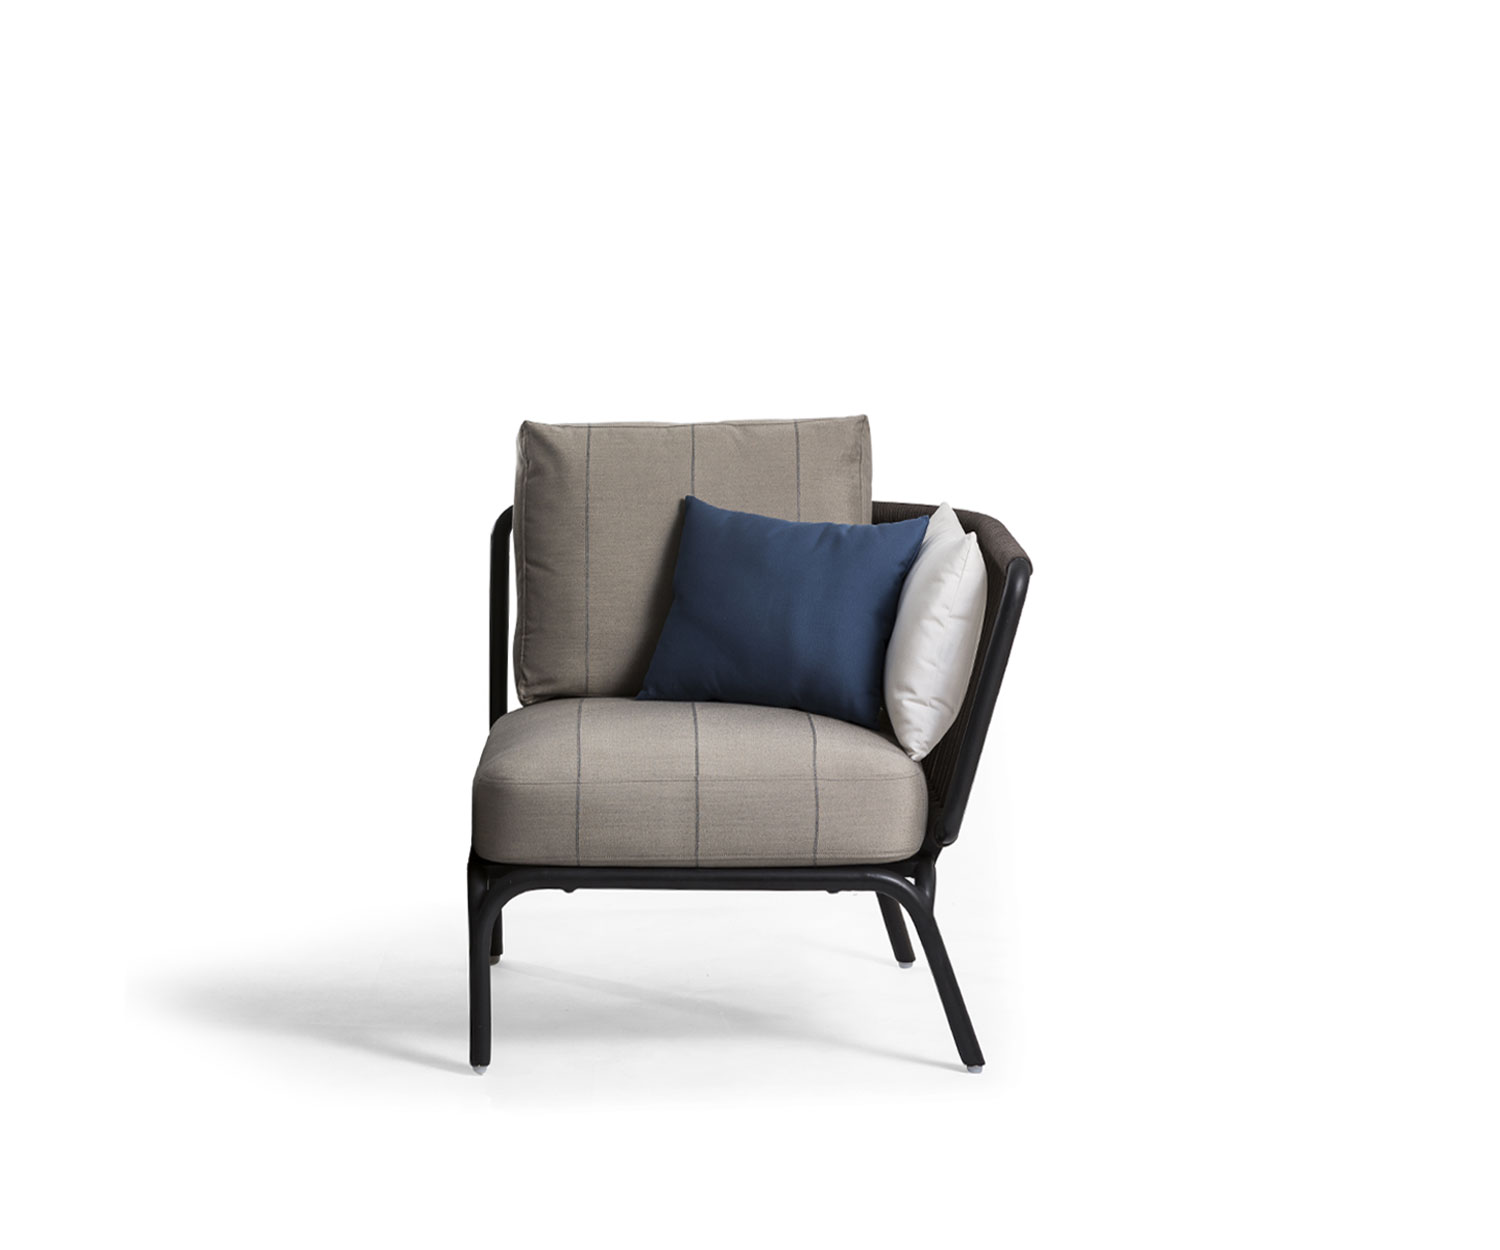 Exklusives Oasiq Yland Eckbank Design Sofa mit grauer Polsterauflage